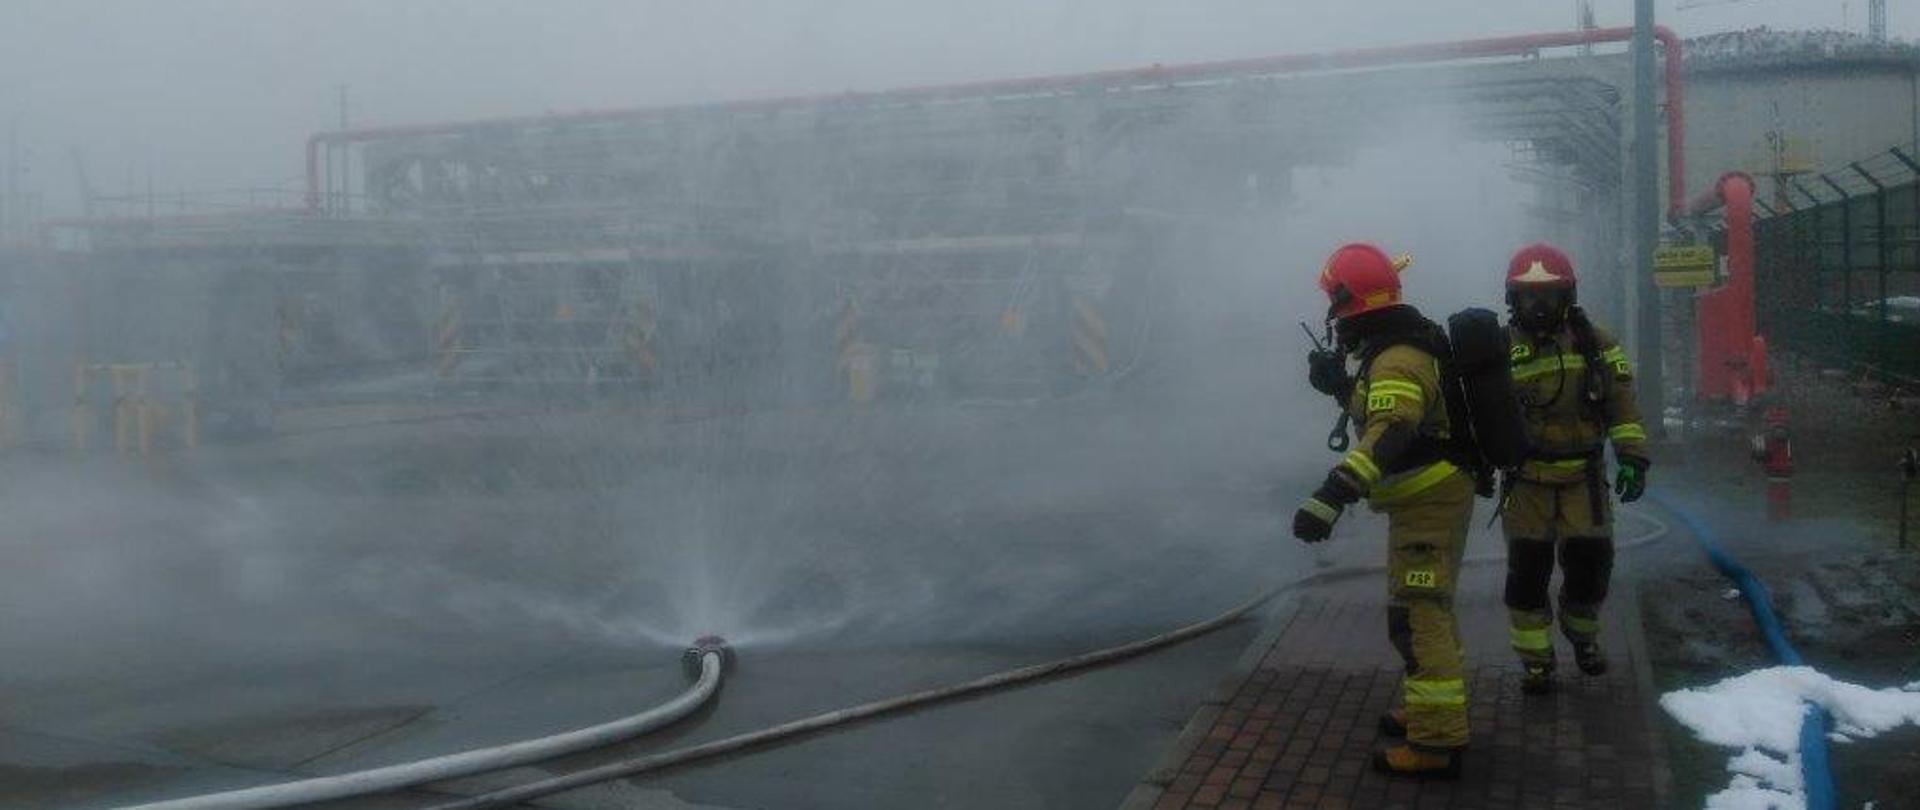 Zdjęcie przedstawia dwóch strażaków w aparatach ochrony dróg oddechowych, w piaskowych ubraniach specjalnych oraz czerwonych hełmach. W tle widać kurtyny wodne podłączone do lini wężowych, z których wylatuje woda tworząc tzw. kurtynę wodną. Na dalszym planie instalacja Terminalu LNG.